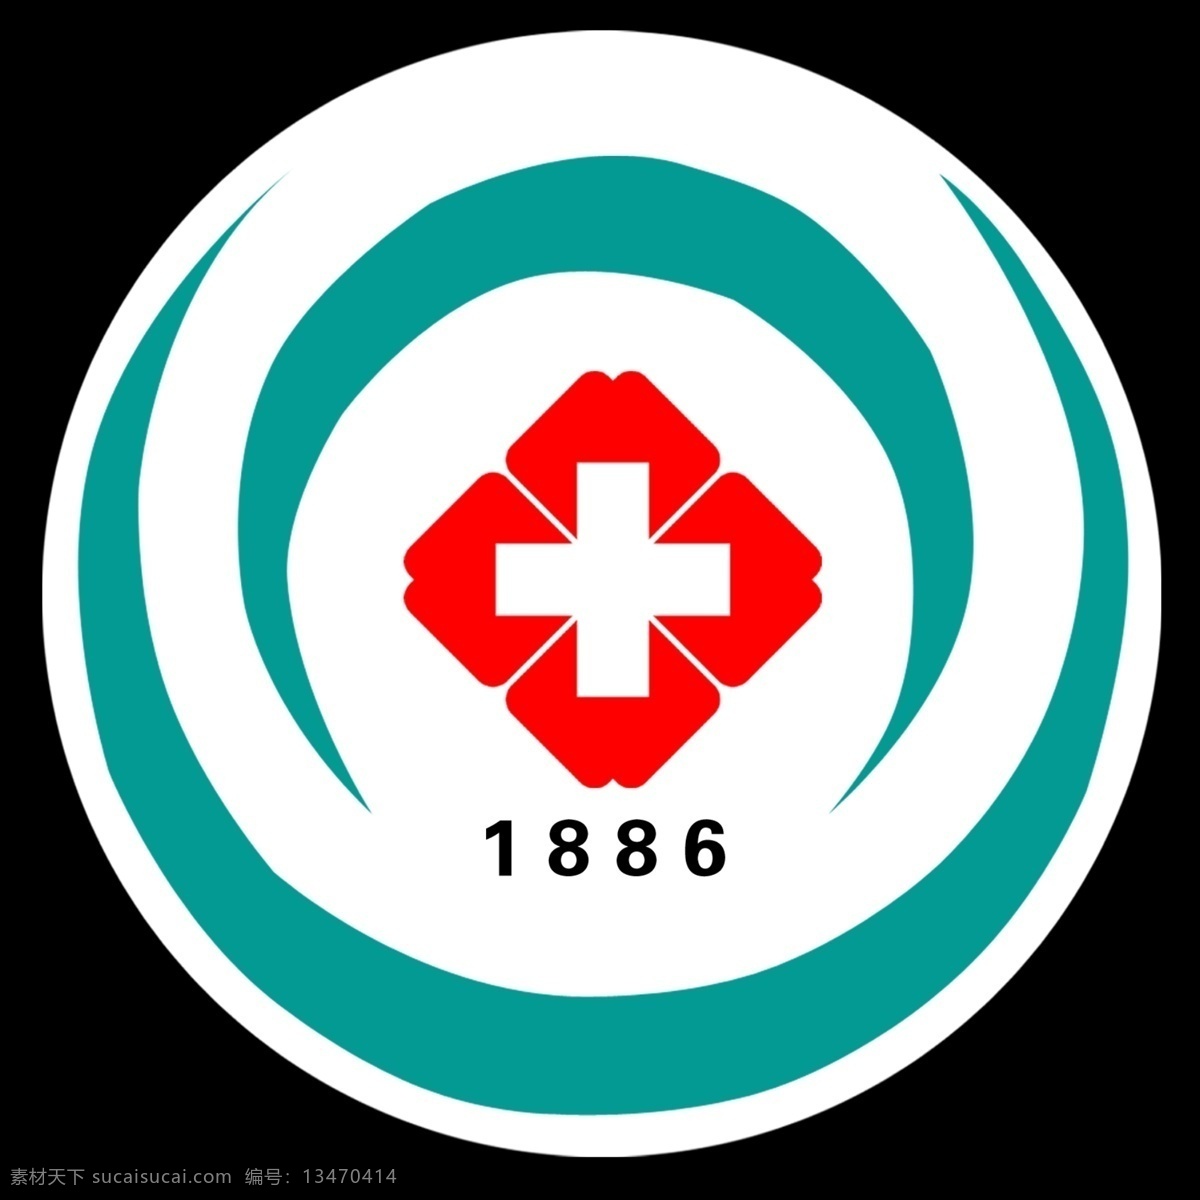 聊城二院标志 医院标志设计 医院标志 红十字 标志设计 广告设计模板 源文件